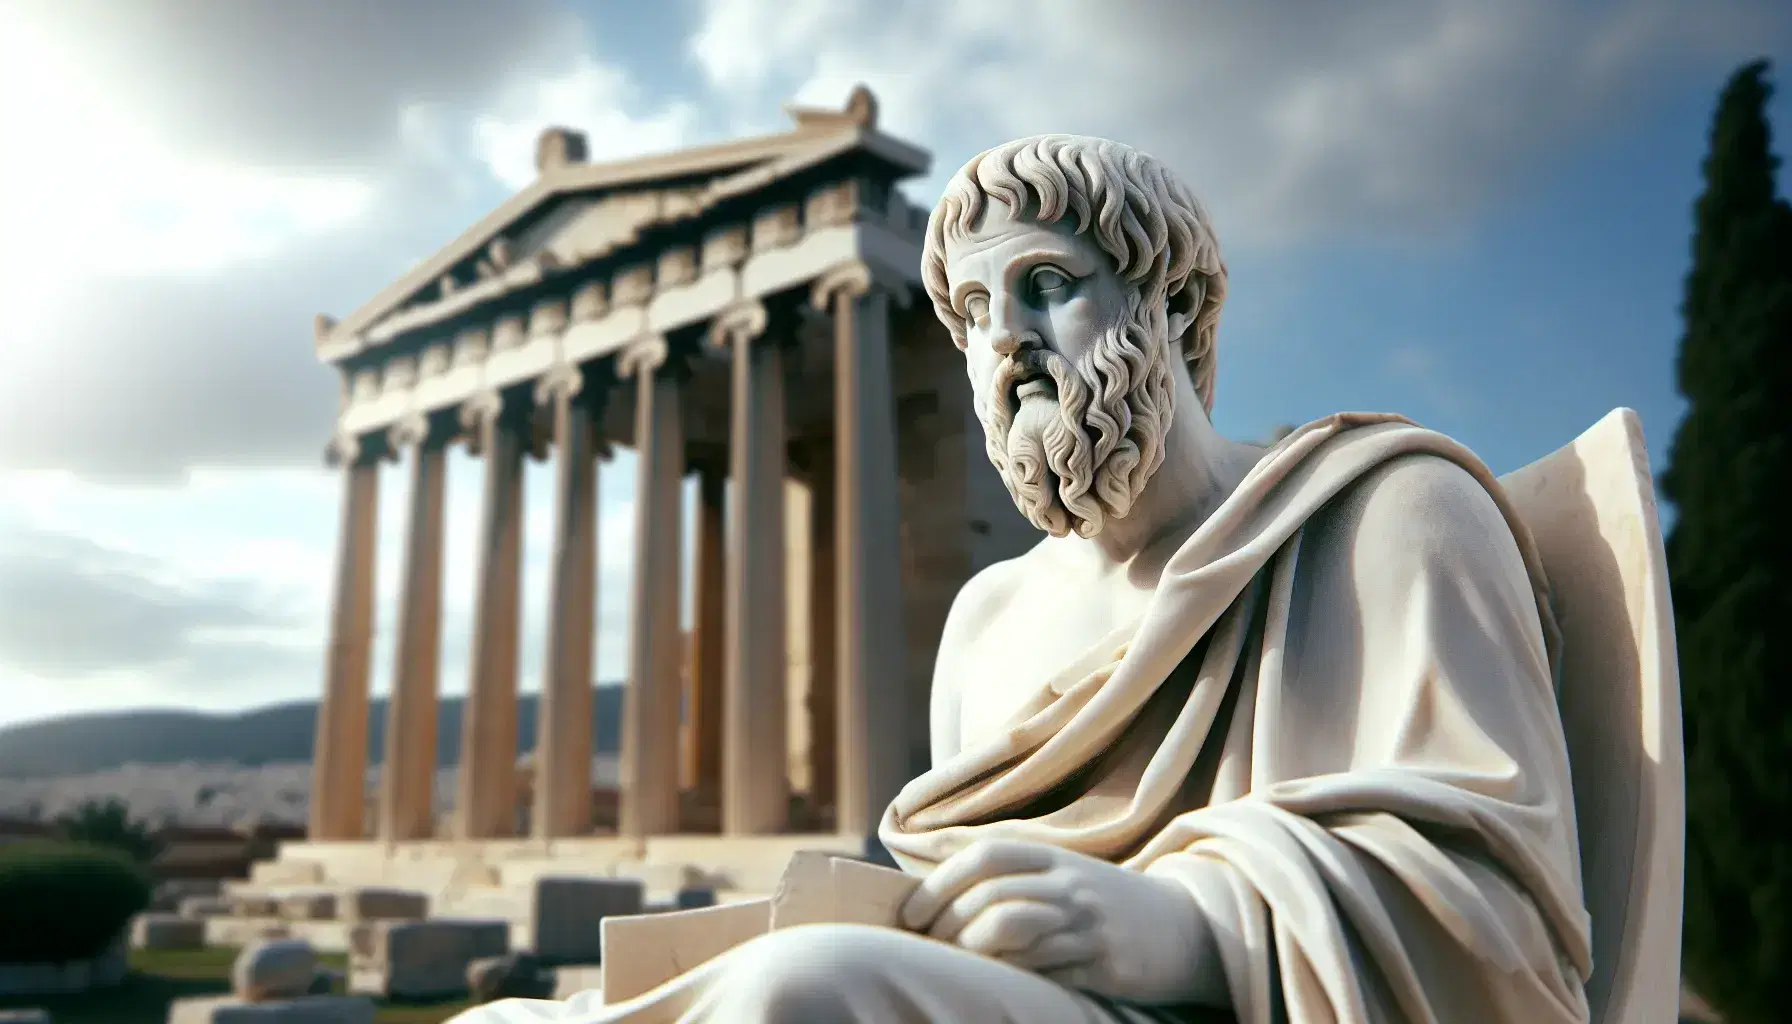 Estatua de mármol blanco de Platón sosteniendo un pergamino, con columnas dóricas antiguas desenfocadas y cielo azul de fondo.